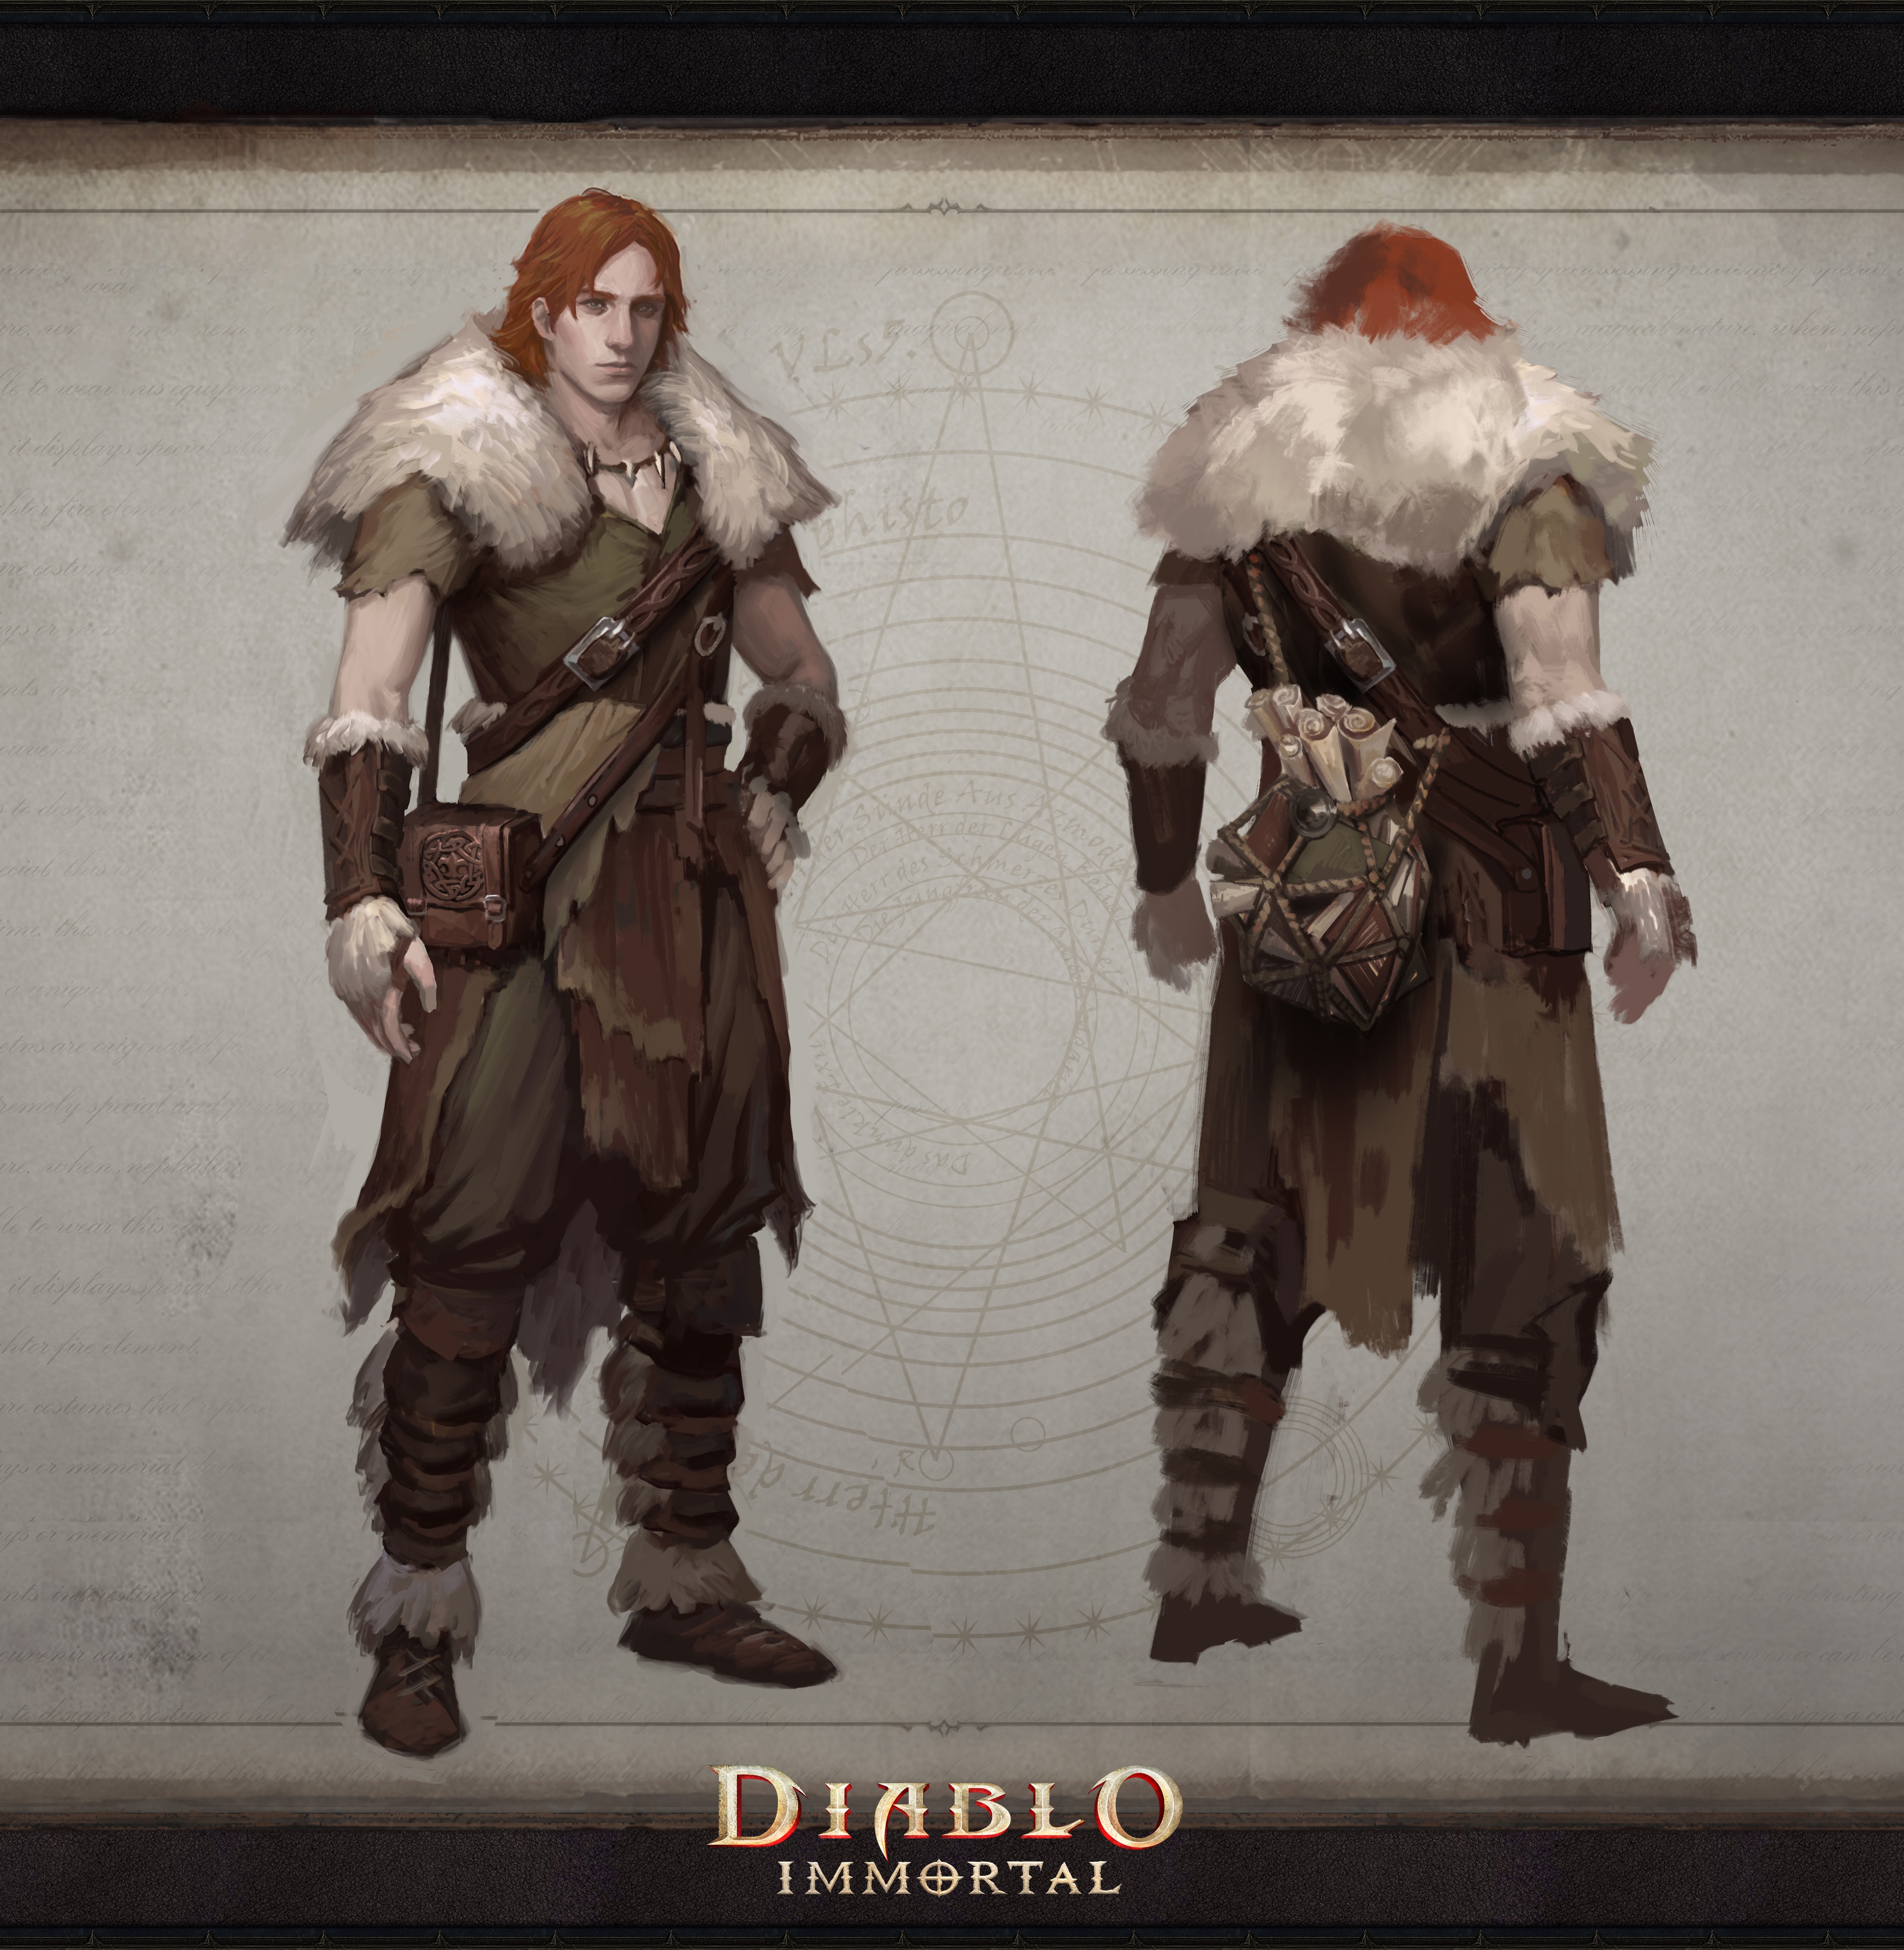 Diablo Immortal: The Story So Far - Wowhead News